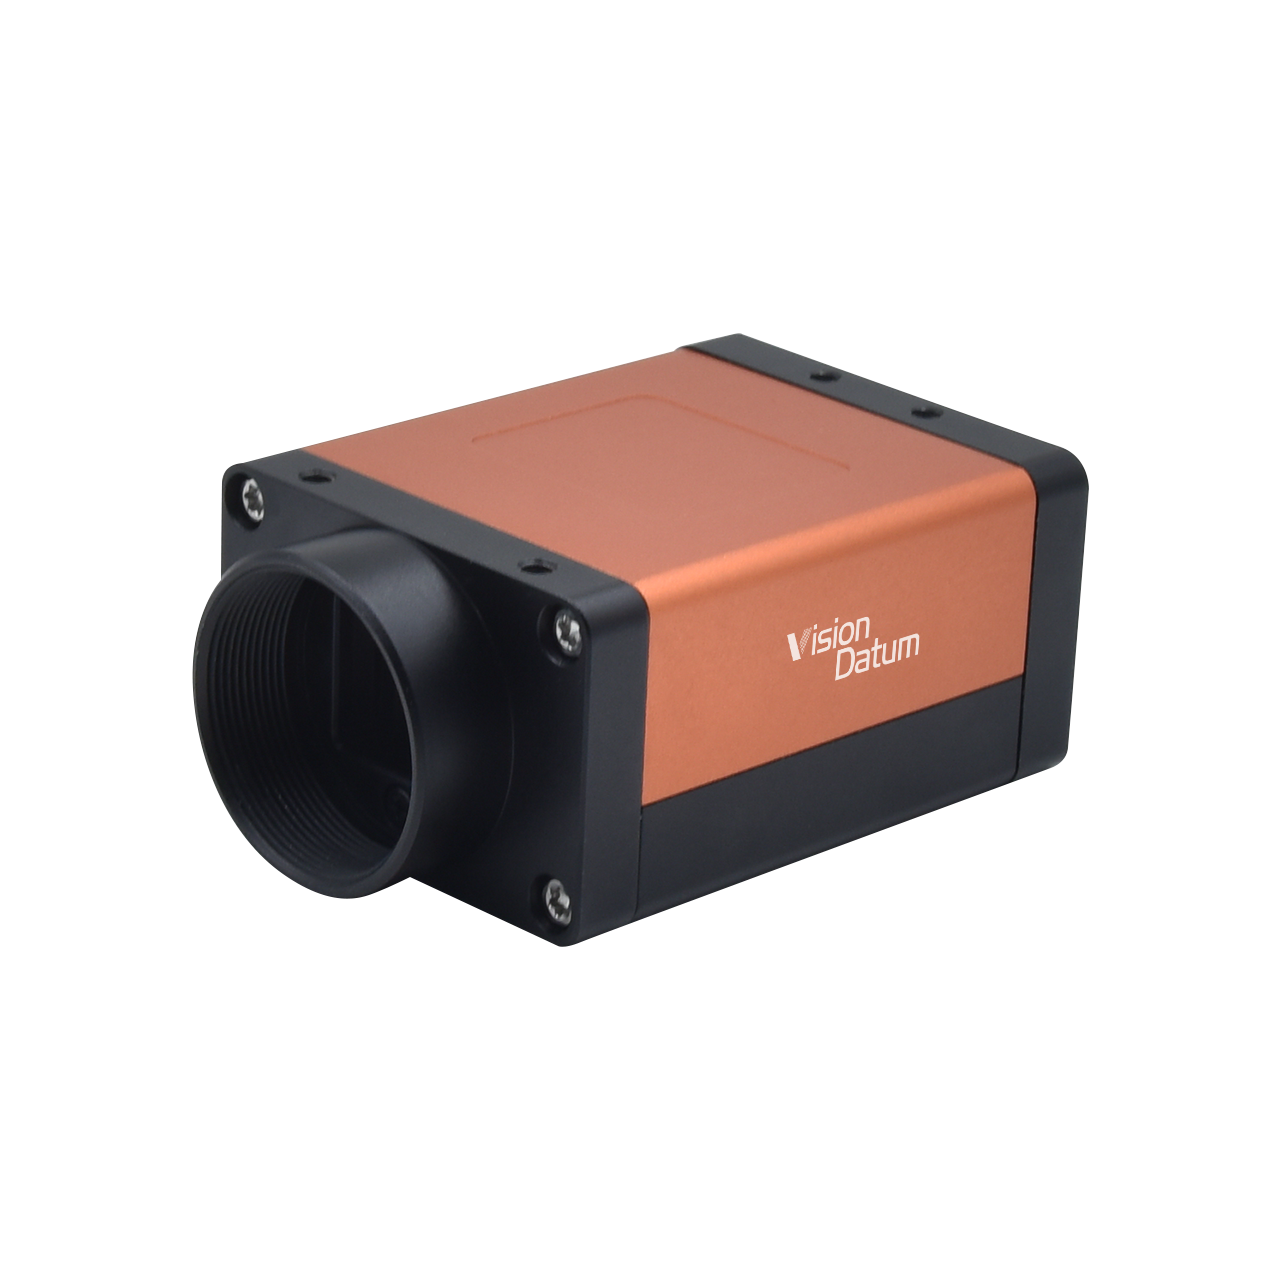 3-мегапиксельная камера IMX252, 188 кадров в секунду, камера с глобальным сканированием области затвора CameraLink